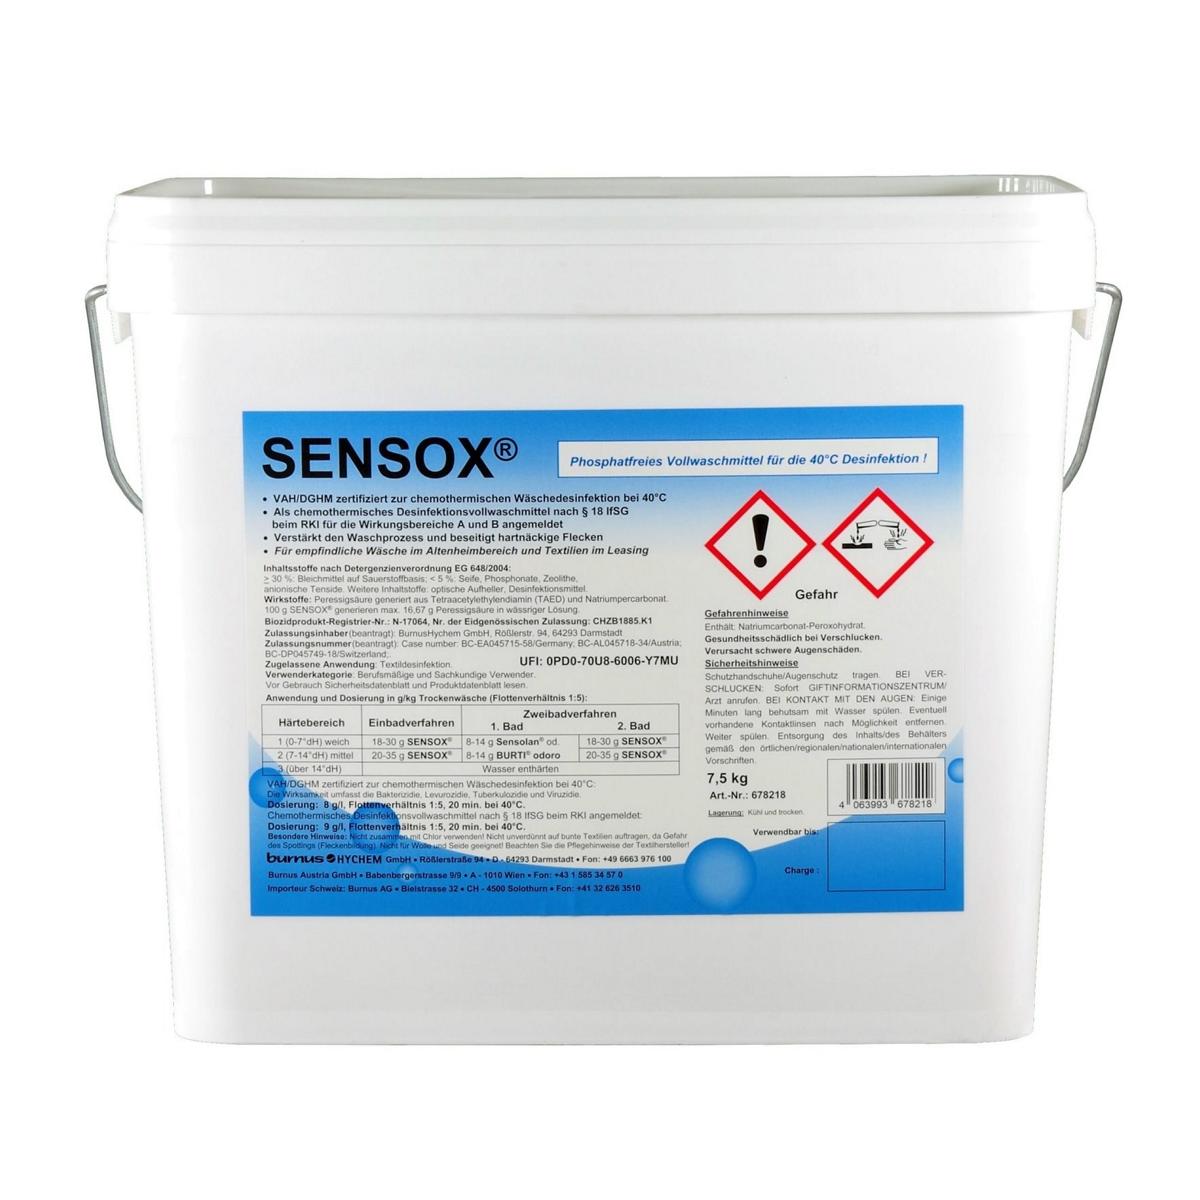 Sensox® | 7,5 kg (Produkt von 12 kg auf 7,5 kg geändert)<br>Desinfektionswaschmittel, bei 40 C° und 20 min Einwirkzeit, VAH-gelistet (RKI angemeldet) <br>+++ BIOZIDPRODUKTE VORSICHTIG VERWENDEN. VOR GEBRAUCH STETS ETIKETT UND PRODUKTINFORMATIONEN LESEN +++